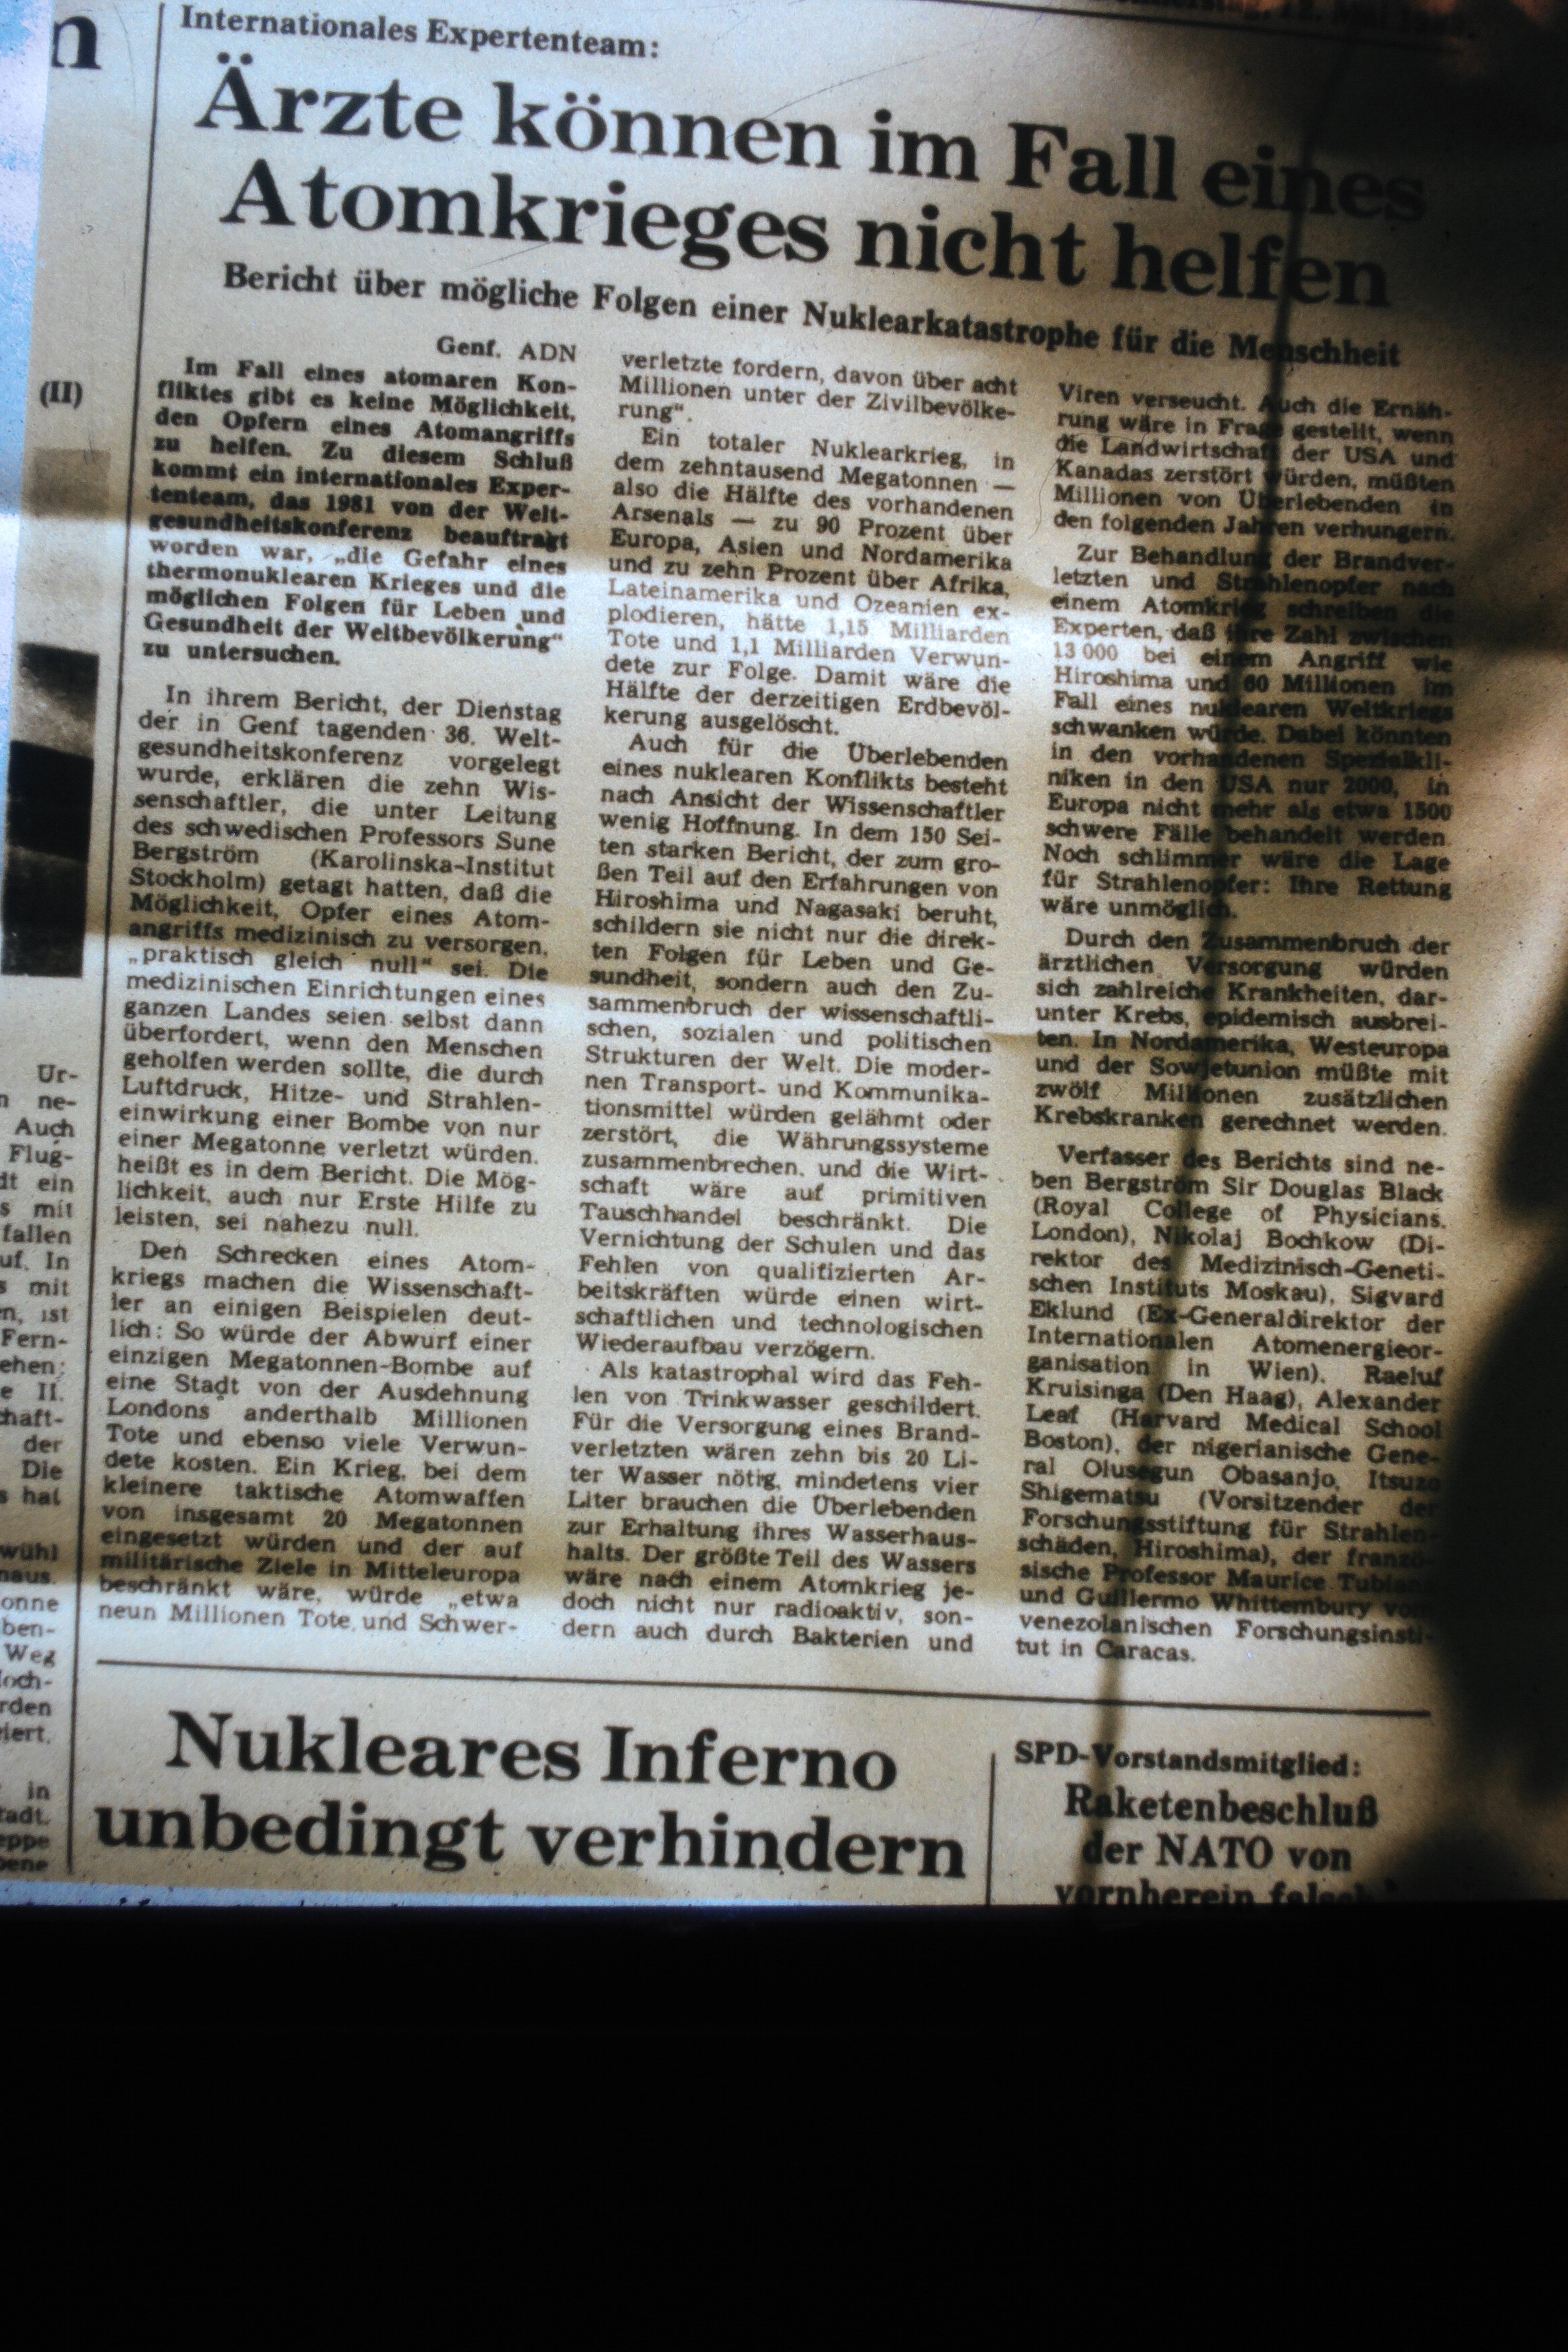 Atomschlagübung "Dosse 83": Zeitungsausschnitt "Ärzte können im Fall eines Atomkriegs nicht helfen" (DDR Geschichtsmuseum im Dokumentationszentrum Perleberg CC BY-SA)